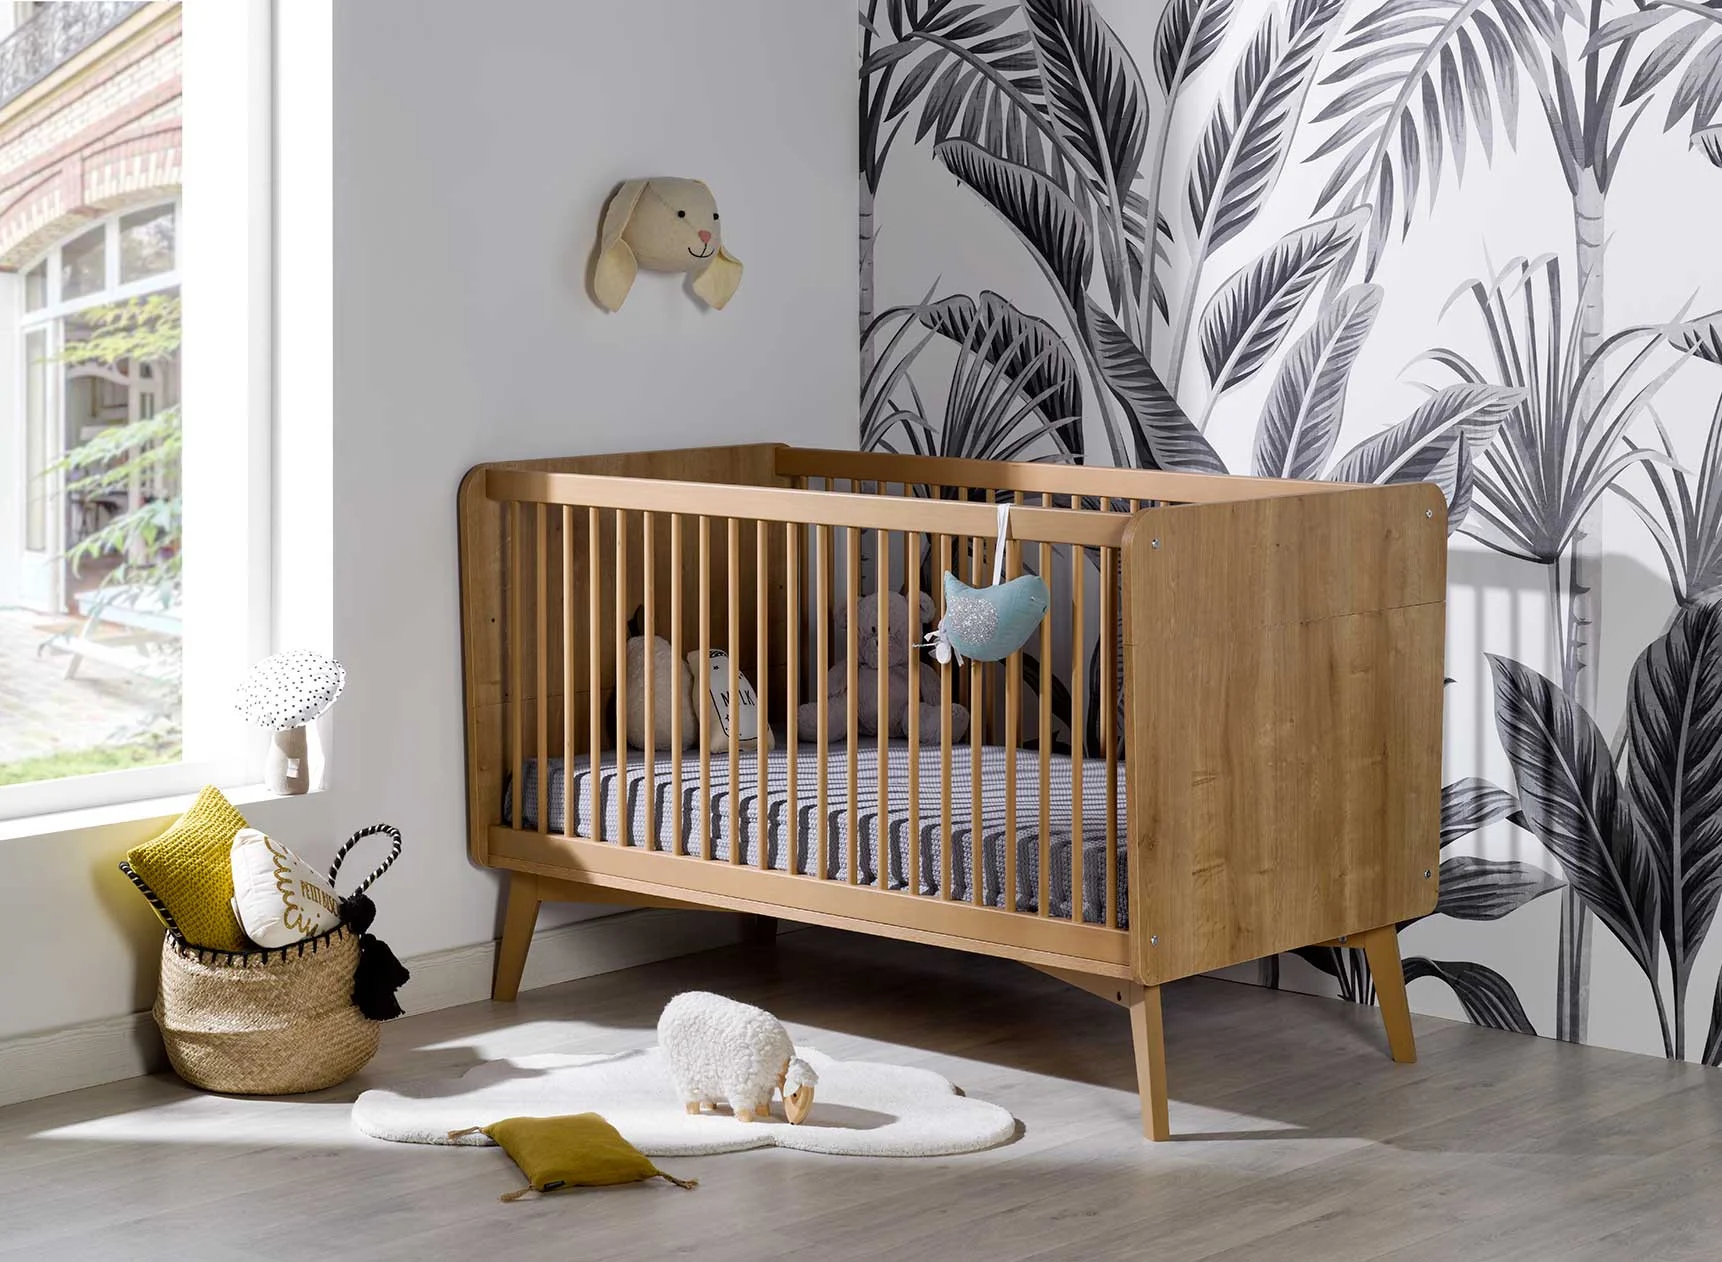 Comment choisir un lit pour votre bébé ?